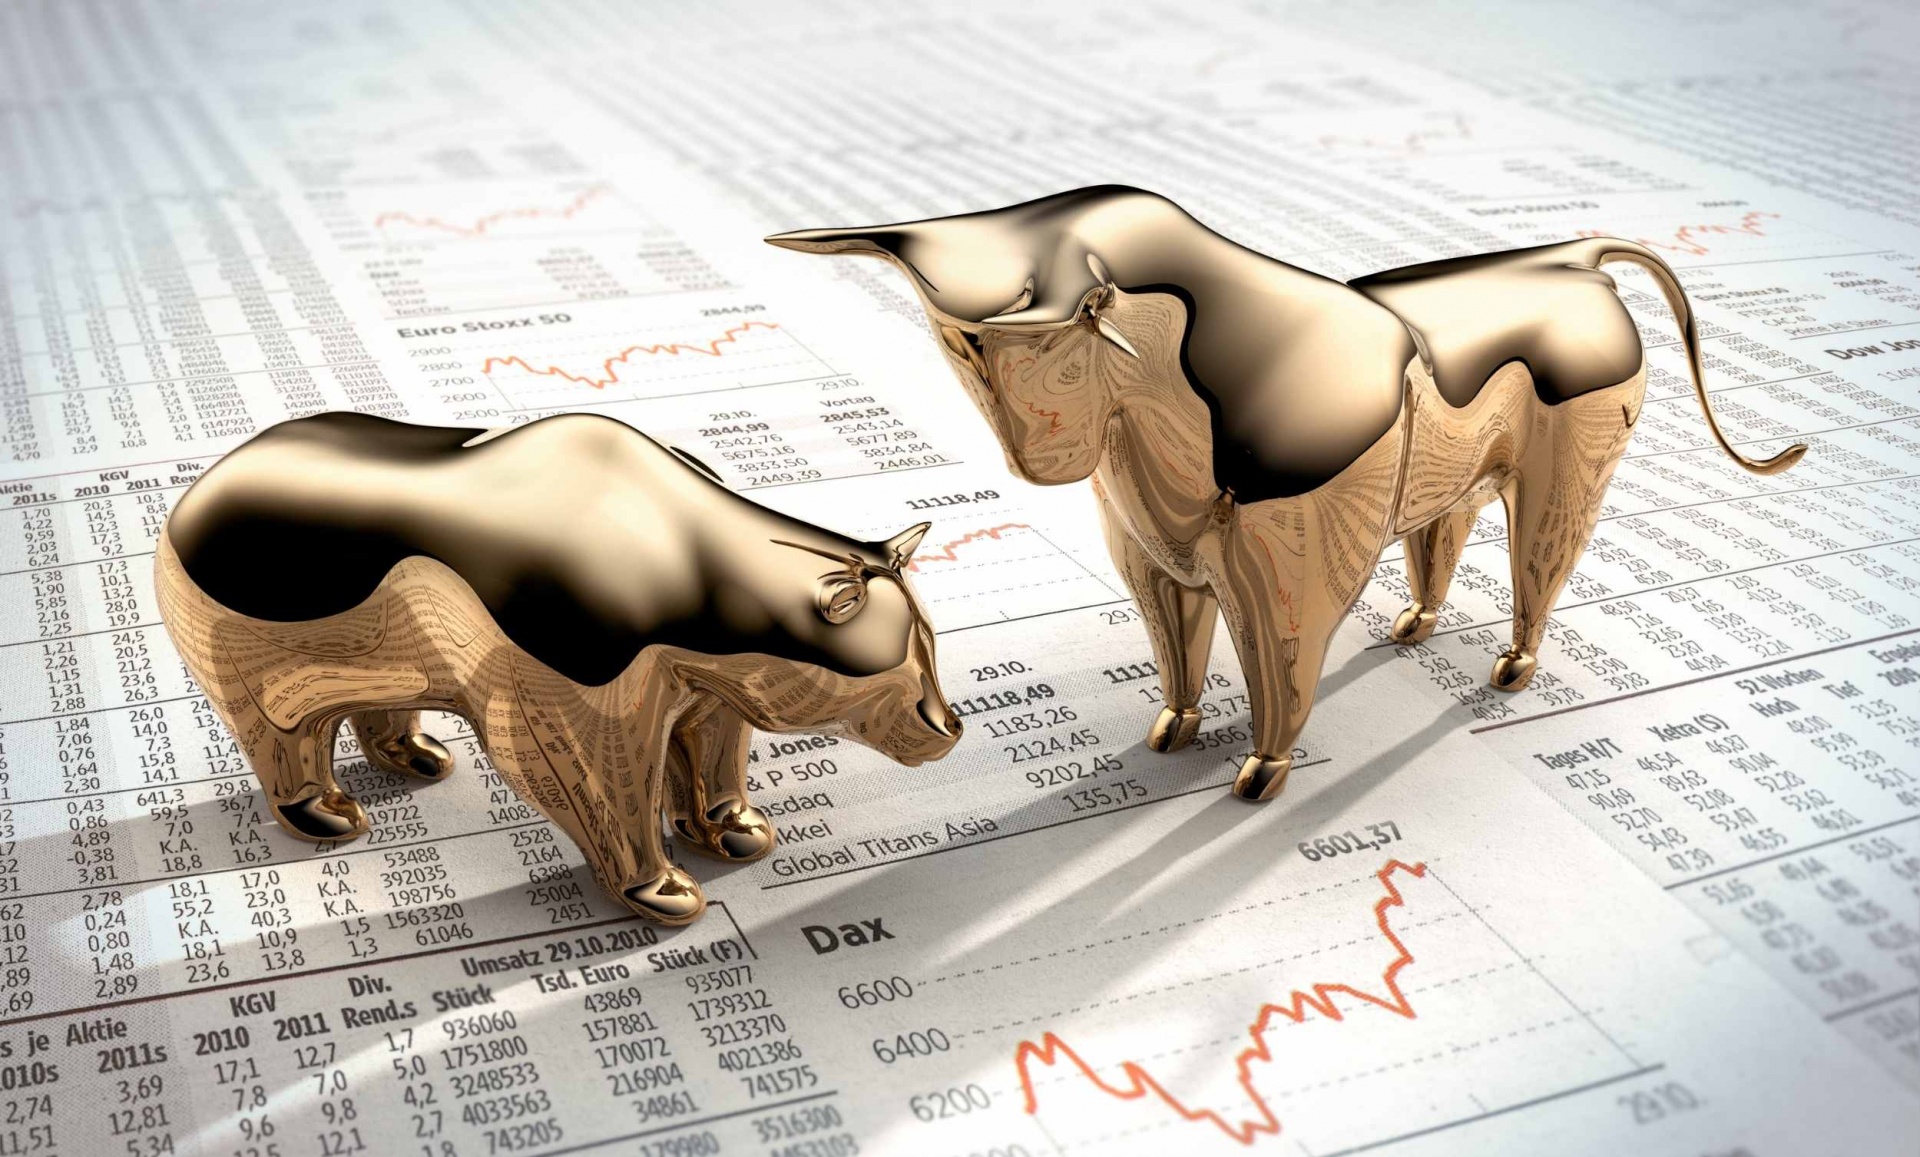 miniaturas douradas de um urso e de um touro estão frente a frente em posição de combate em cima de papéis com números e gráficos